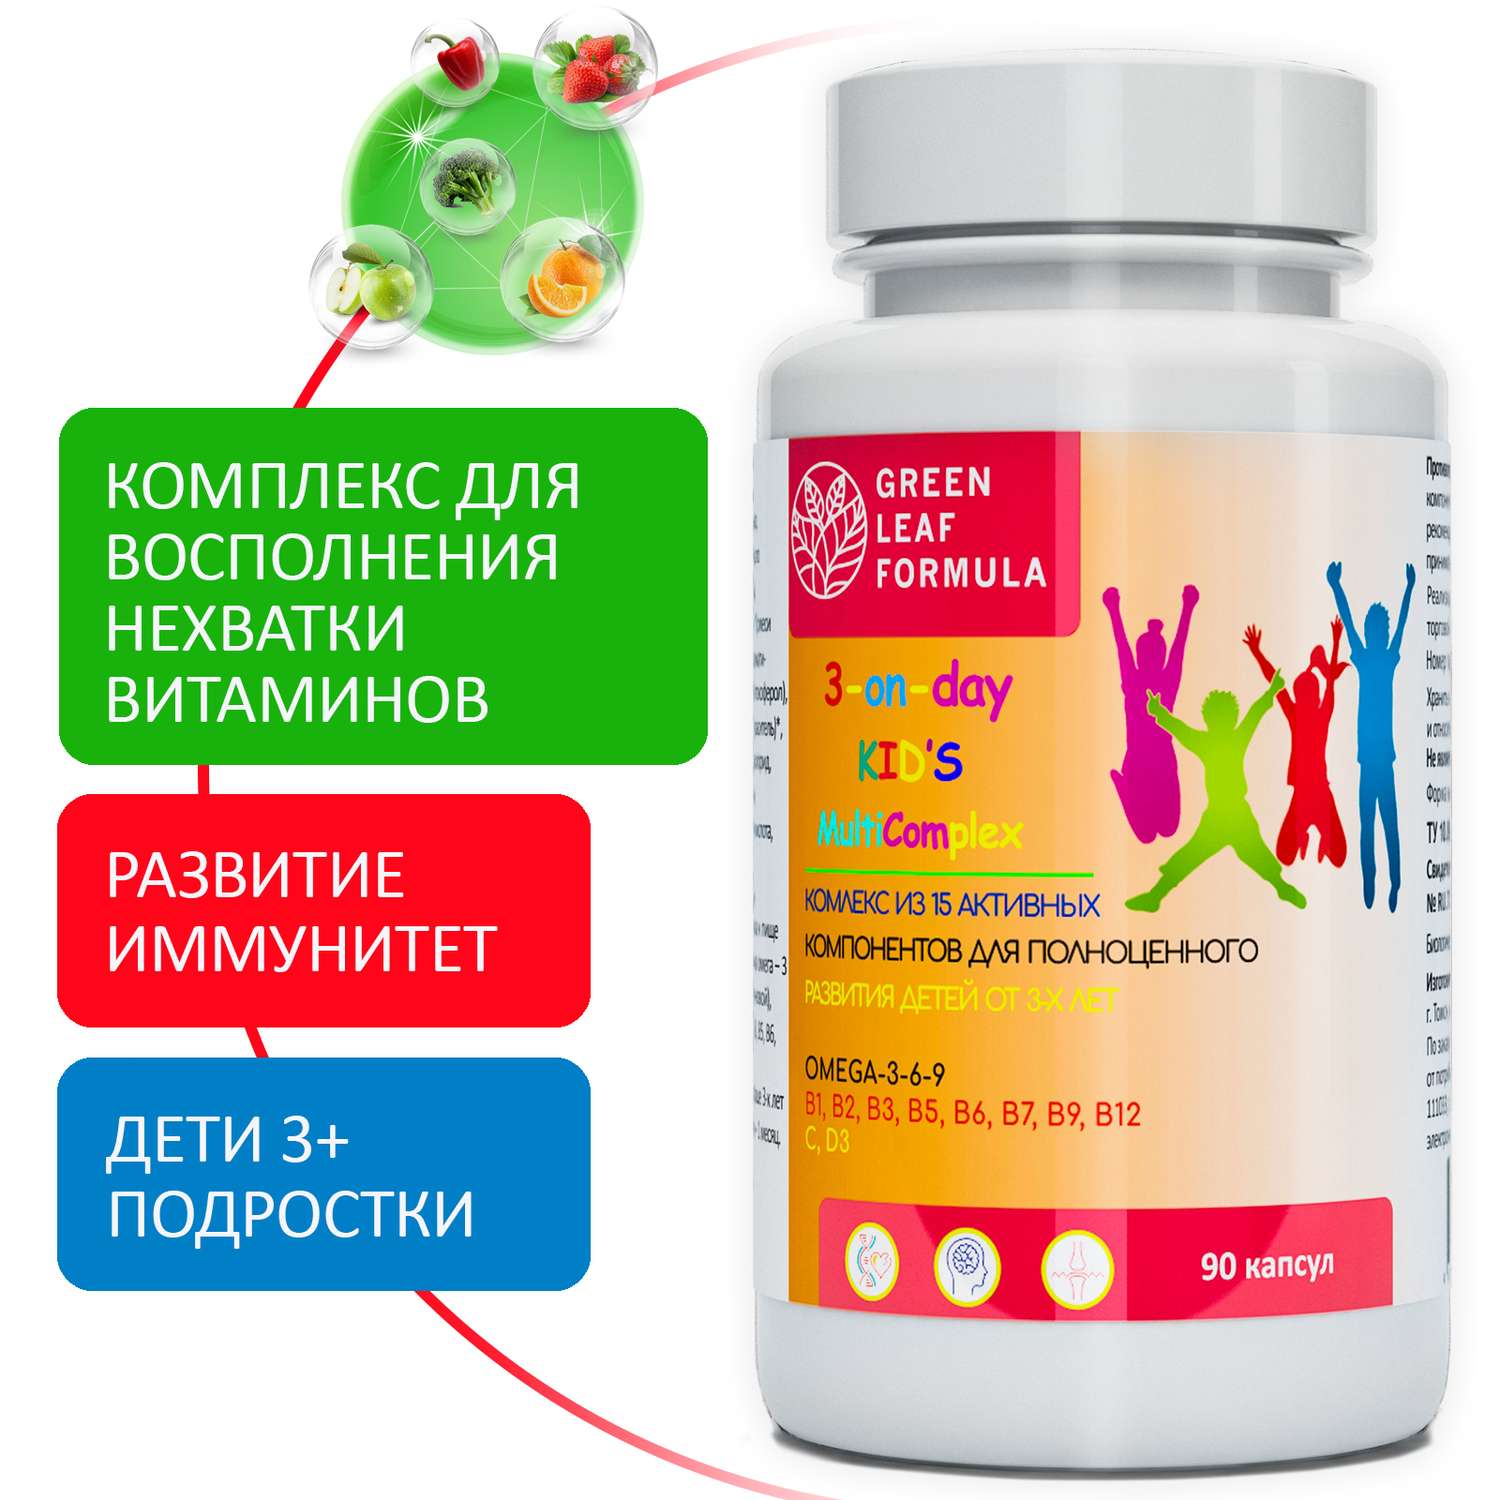 Детский мультикомплекс Green Leaf Formula омега 3-6-9 витамины B А Е D3 С 3 банки по 90 капсул - фото 2